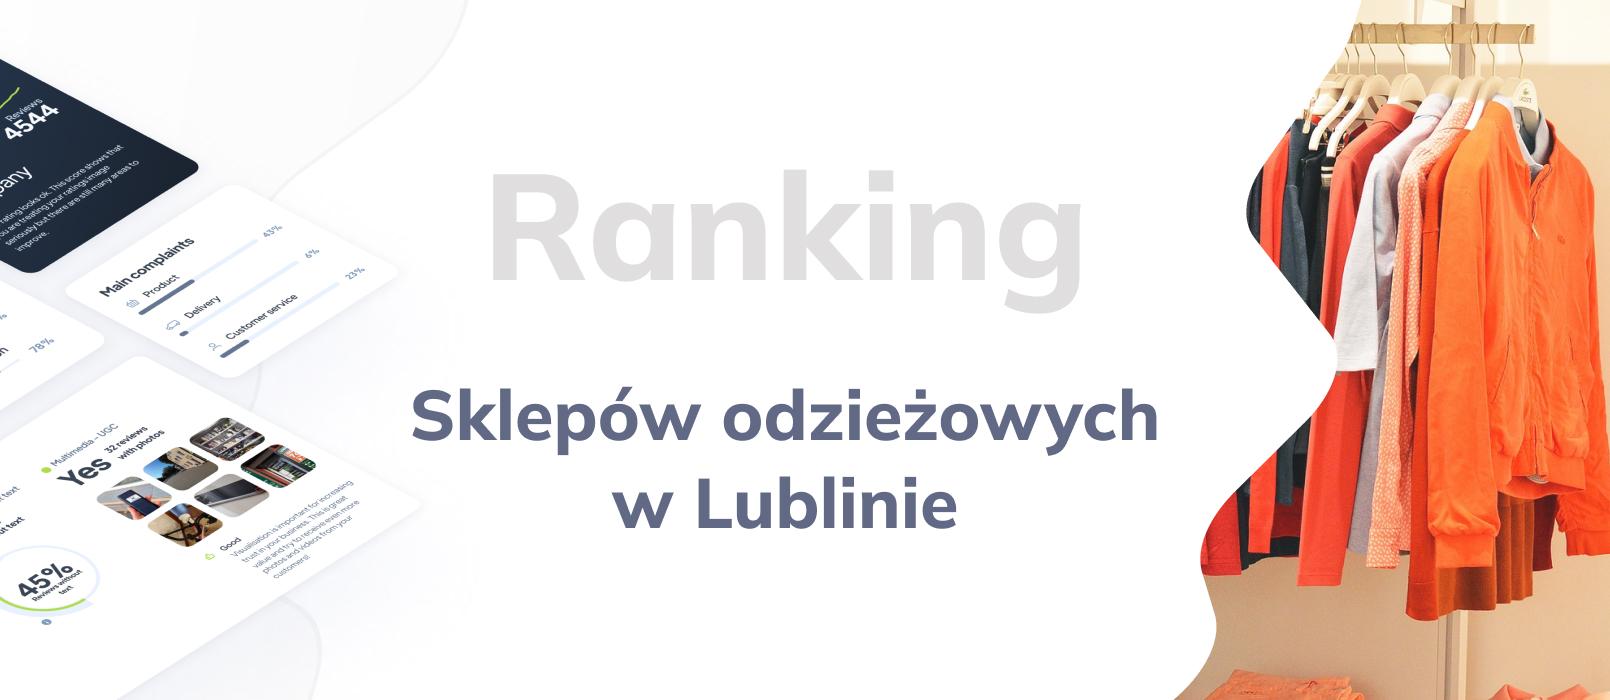 Sklepy odzieżowe w Lublinie - ranking TOP 10